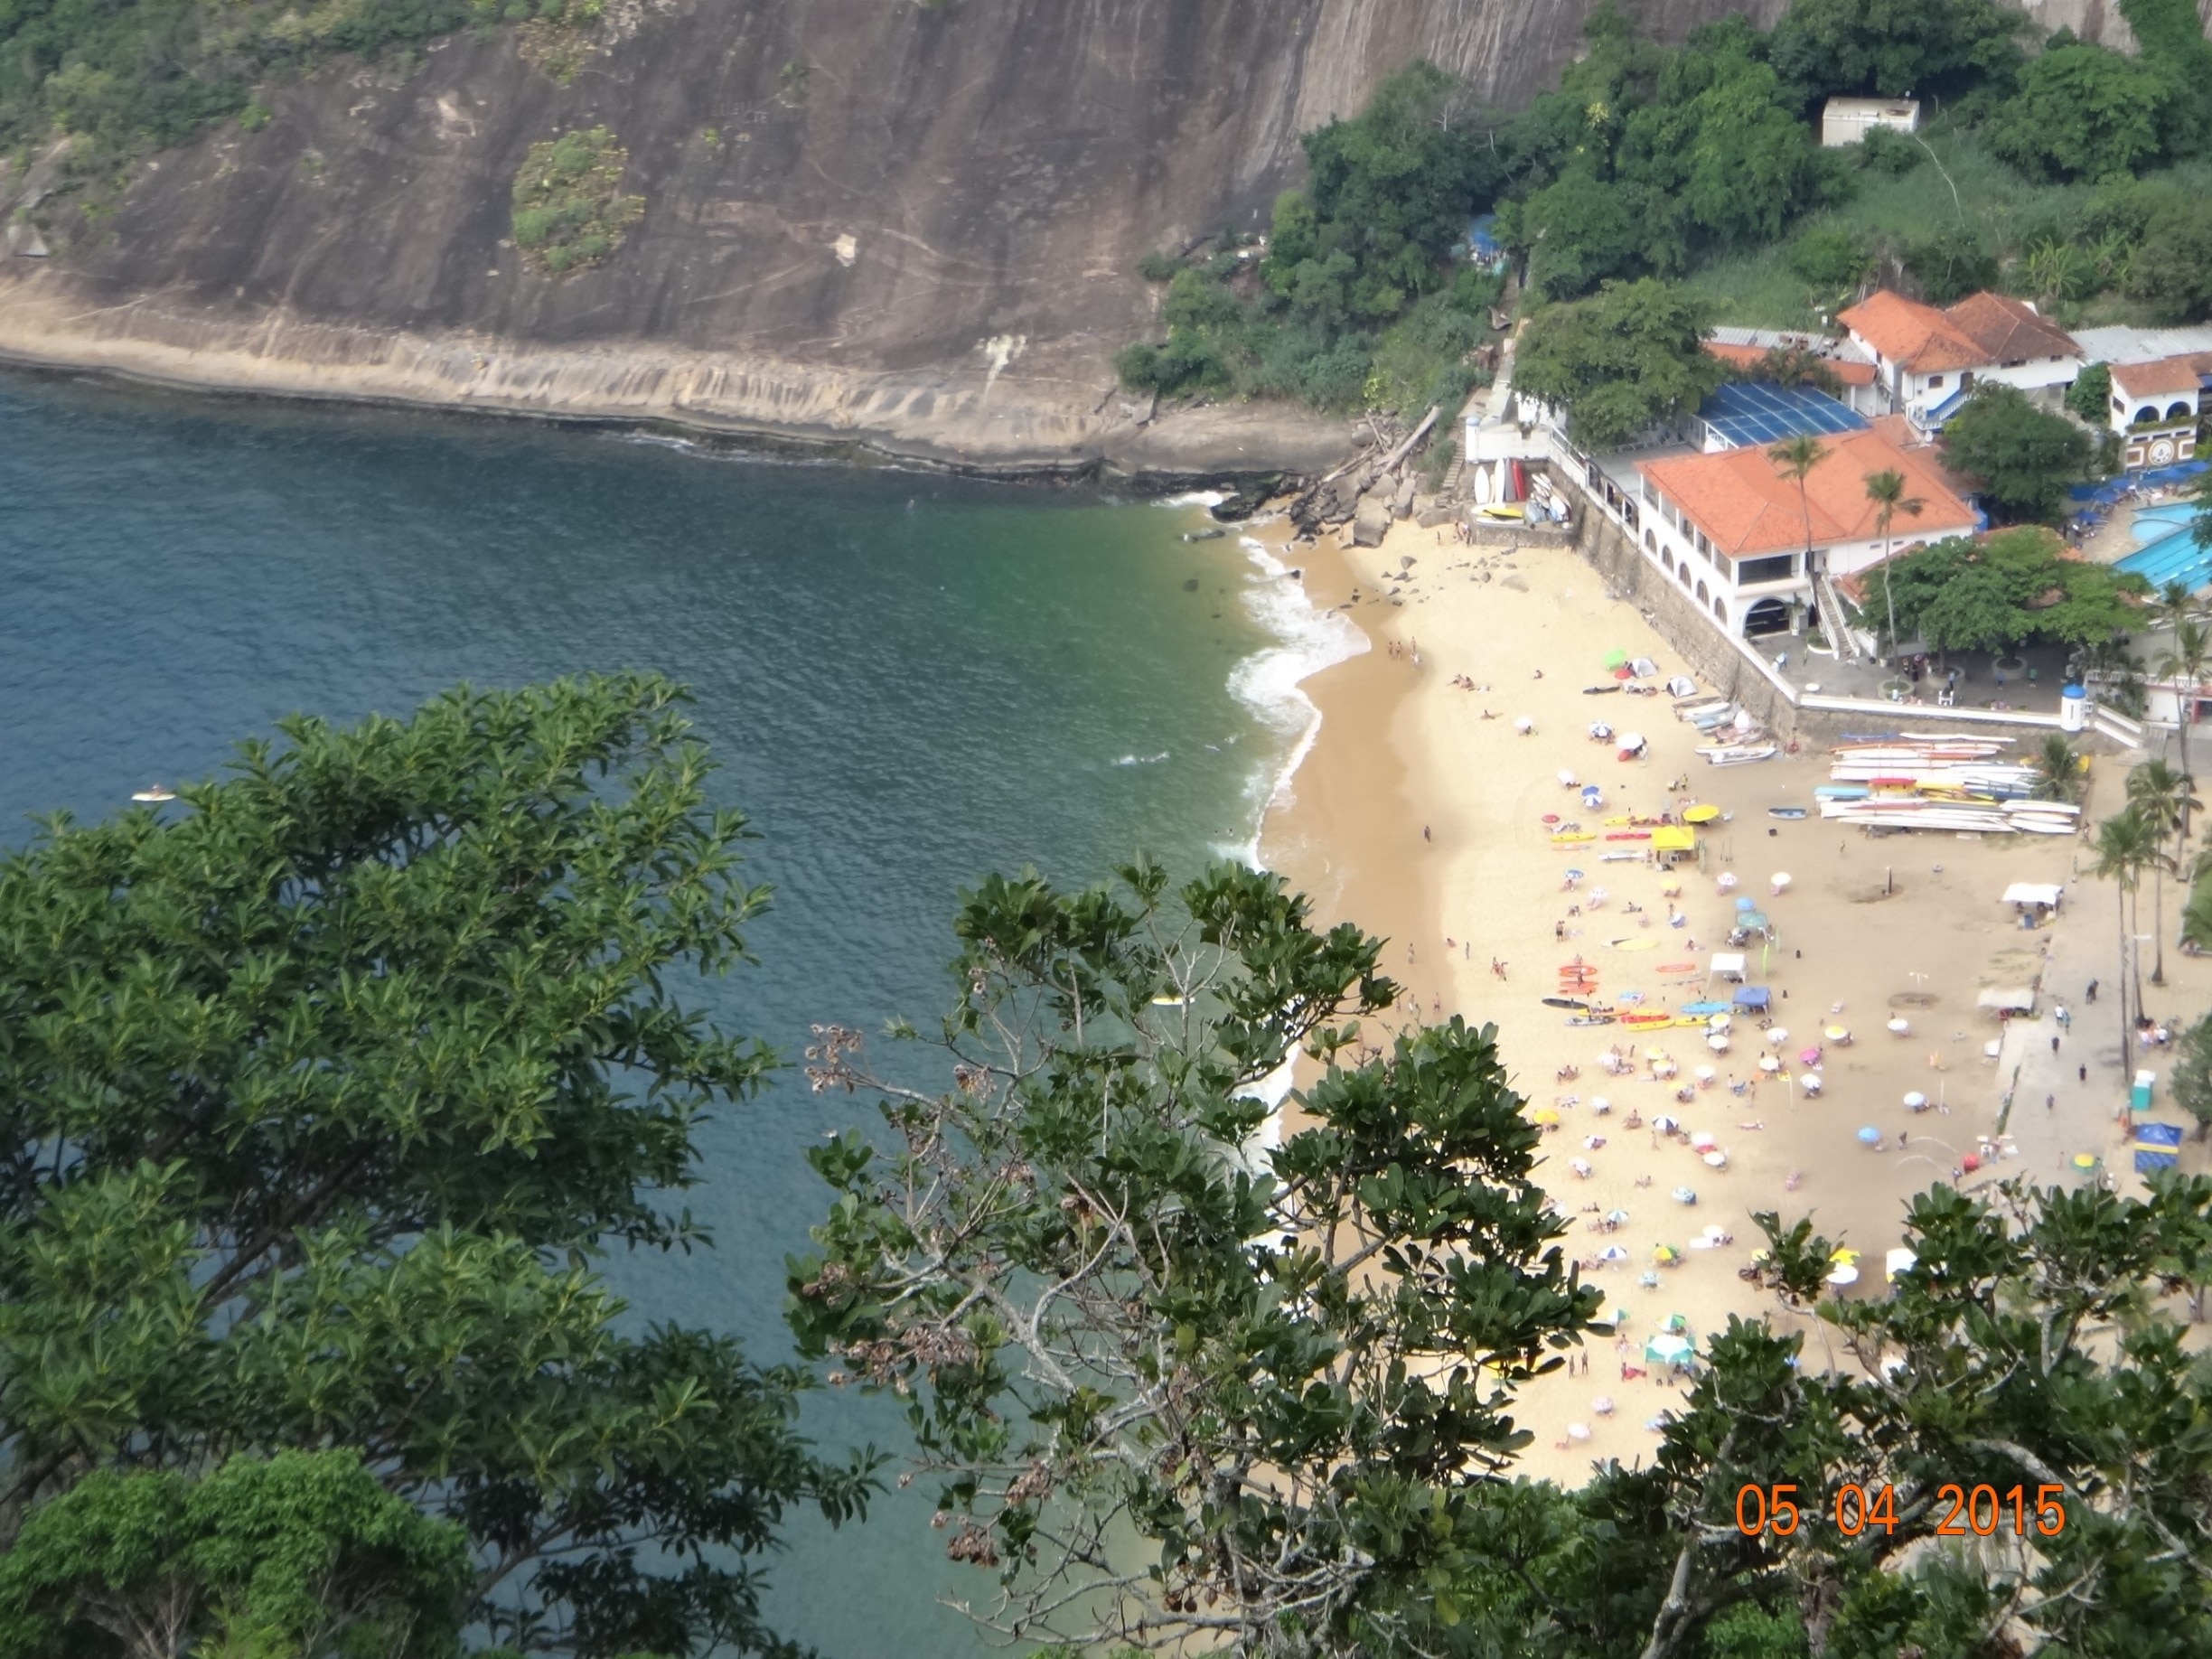 Vermelha Beach, Rio de Janeiro, Rio de Janeiro State, Brazil